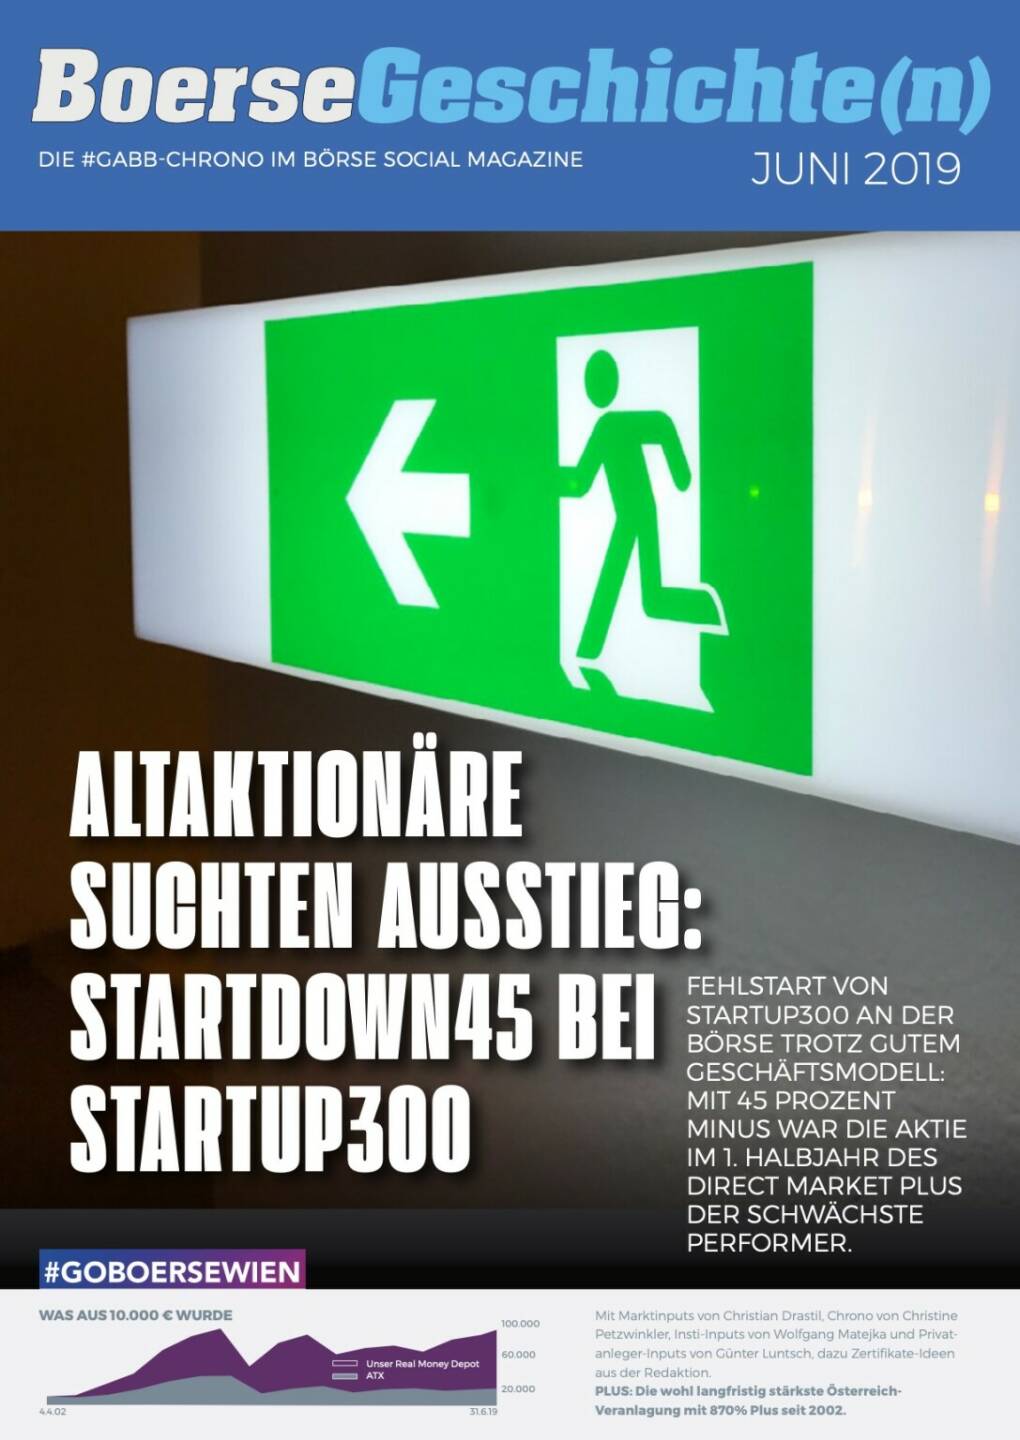 Börsegeschichte(n) Juni 2019 - Altaktionäre suchten Ausstieg: Startdown45 bei startup300